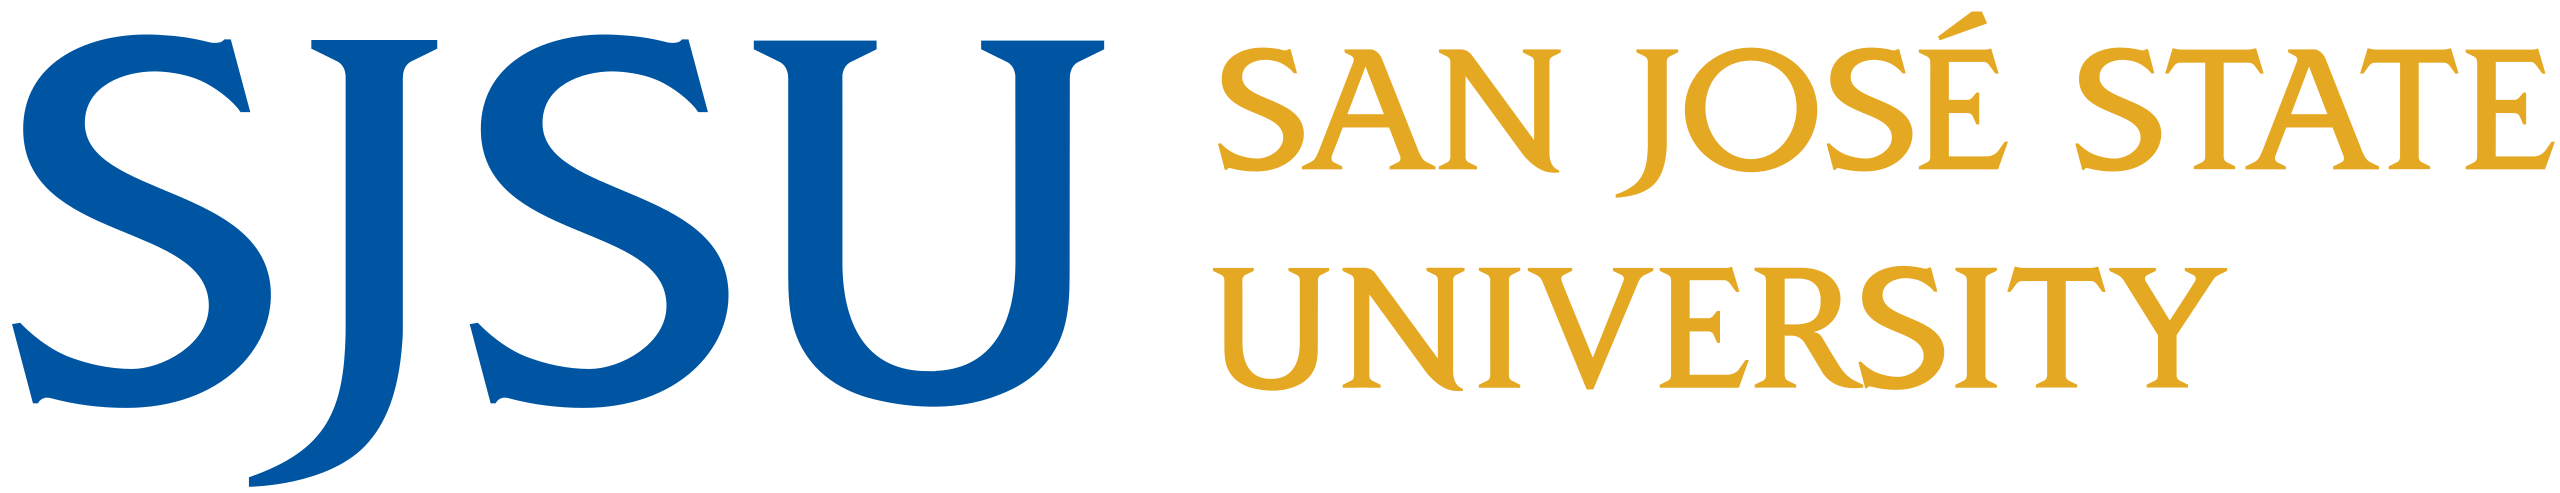 2560px-San_Jose_State_University_logo.svg